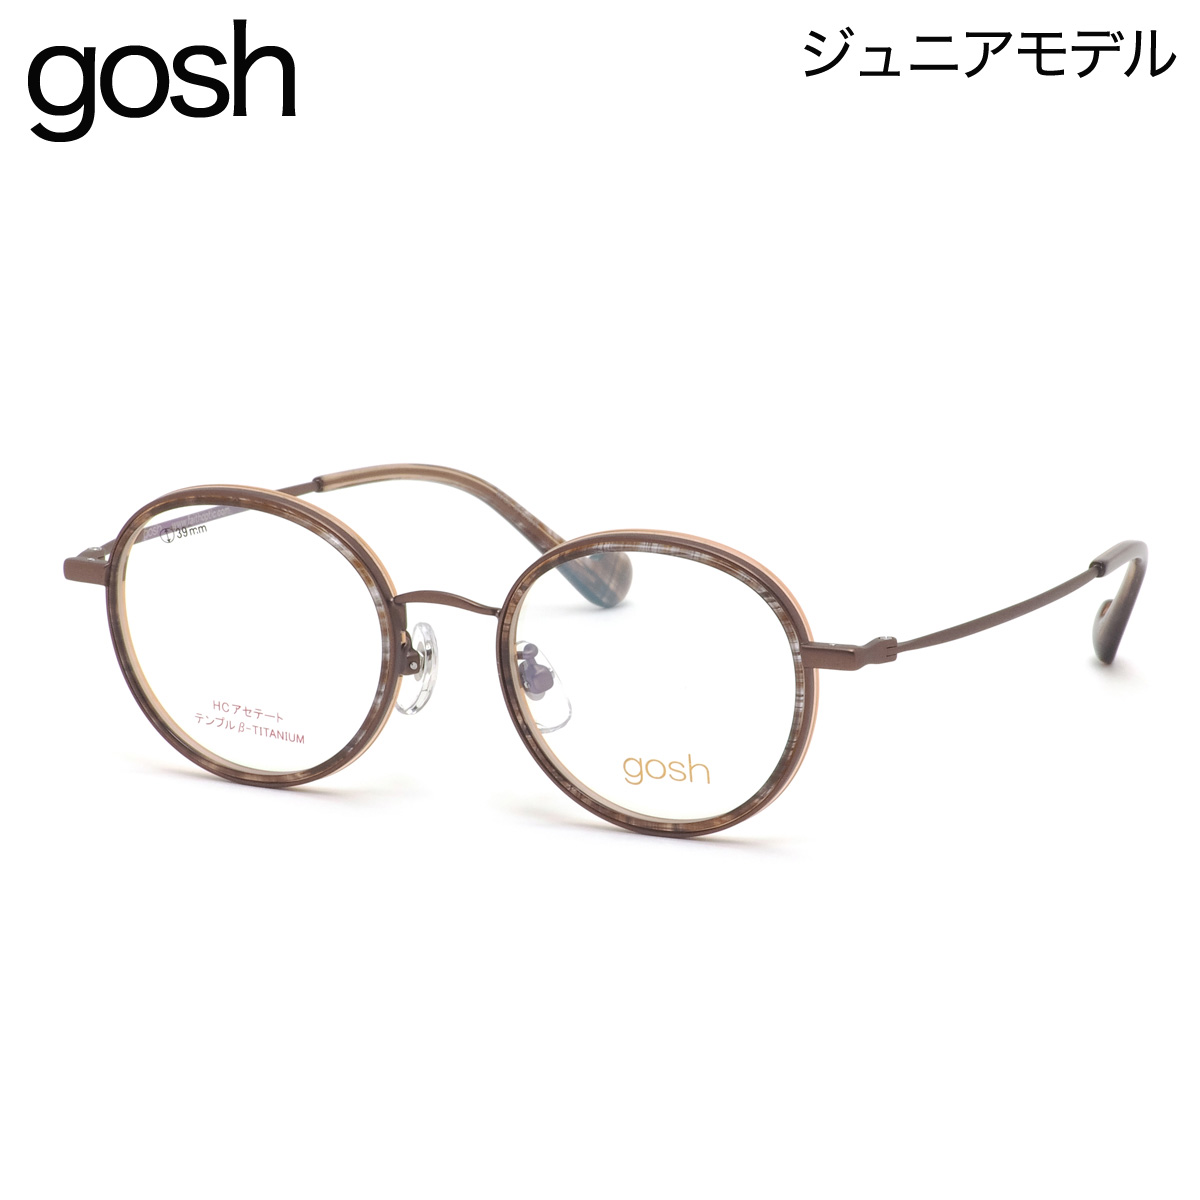 【楽天市場】ゴッシュ gosh GOS-1030 1 45 メガネ GOSH スモール